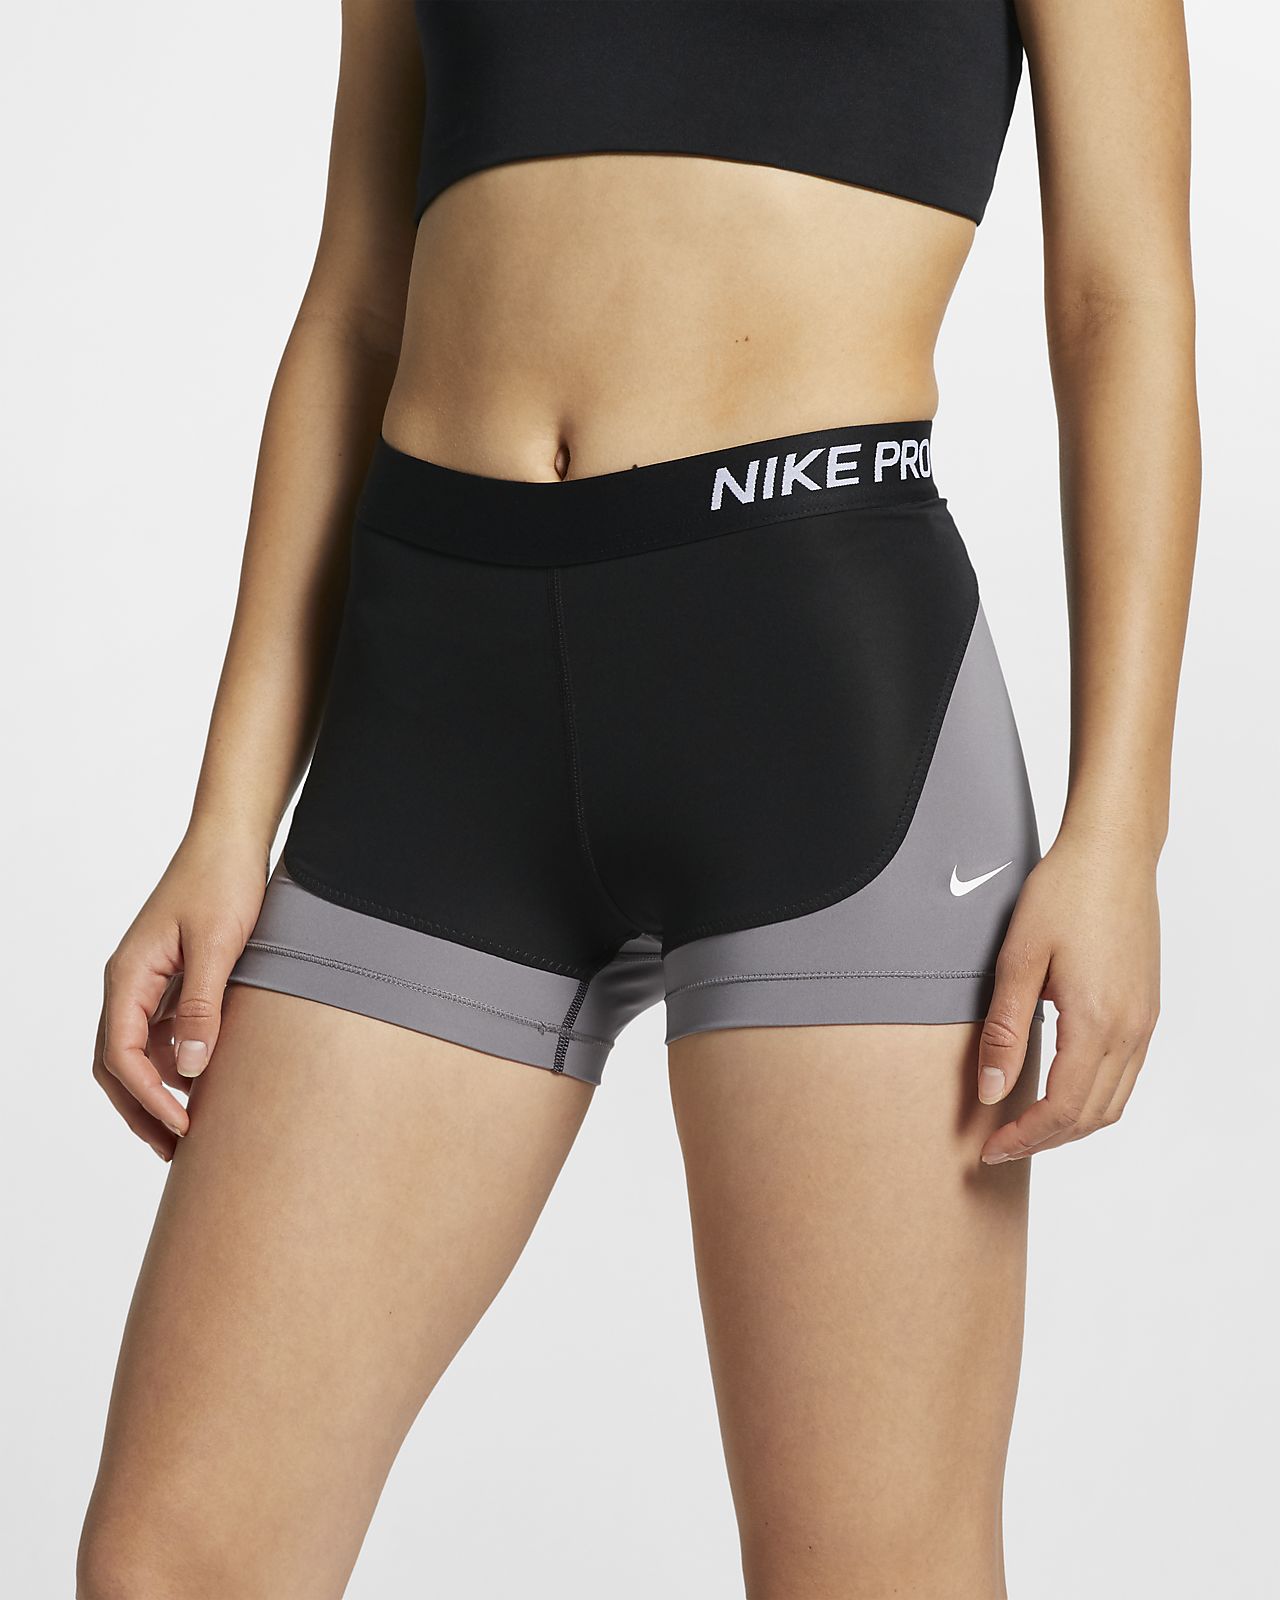 nike pro women's 3 shorts canada